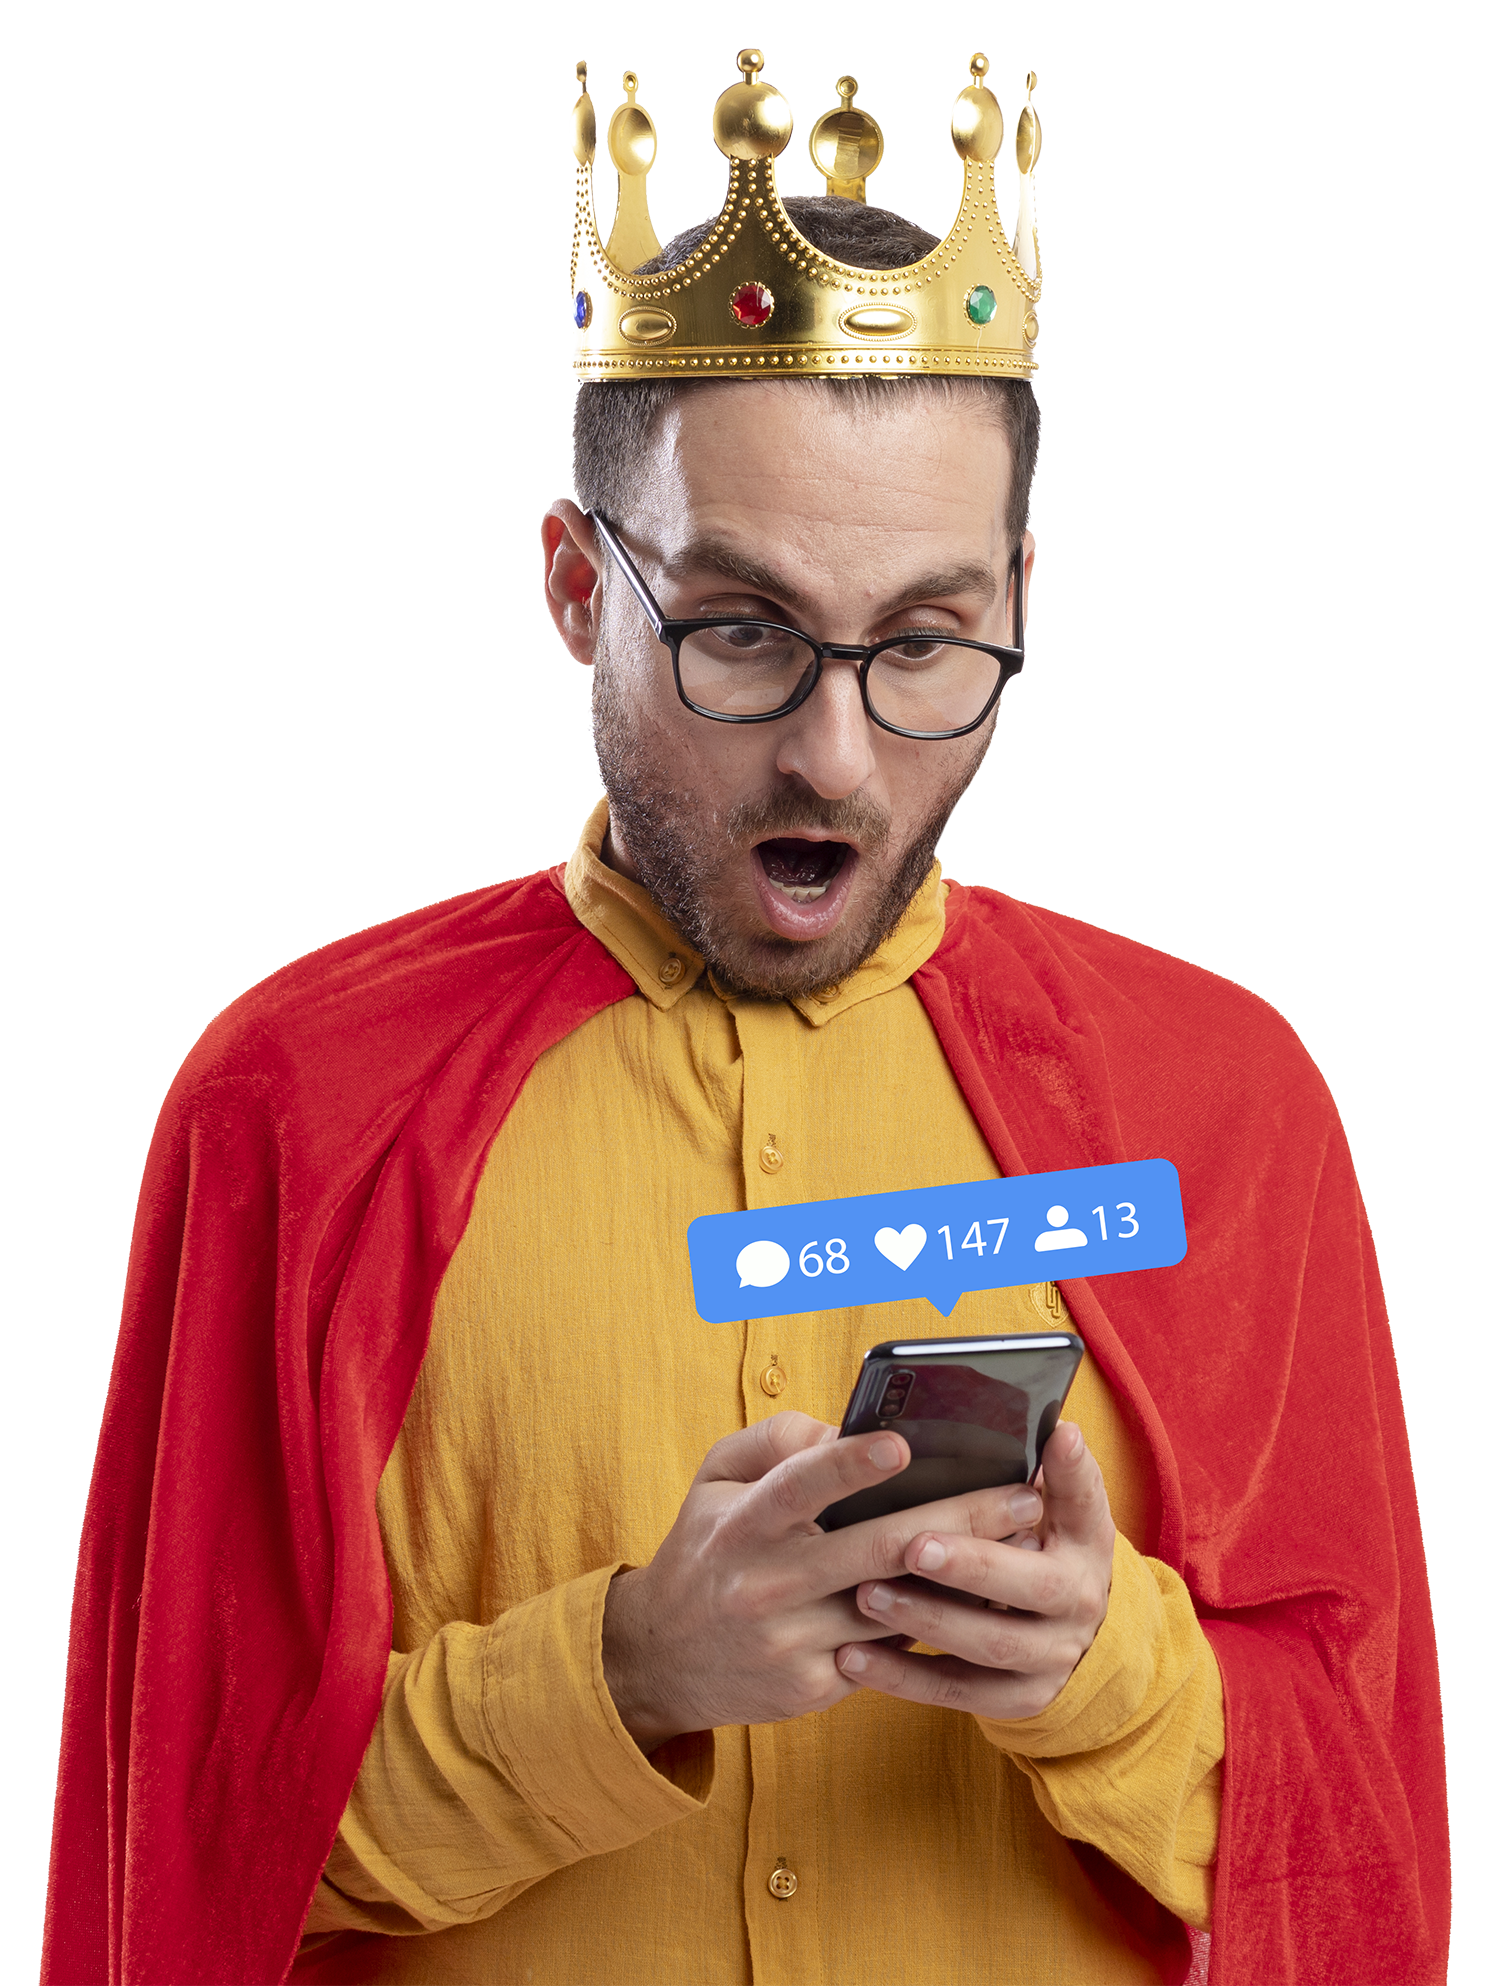 Image d'une personne couronnée en tant que roi des réseaux sociaux, symbolisant l'influence.